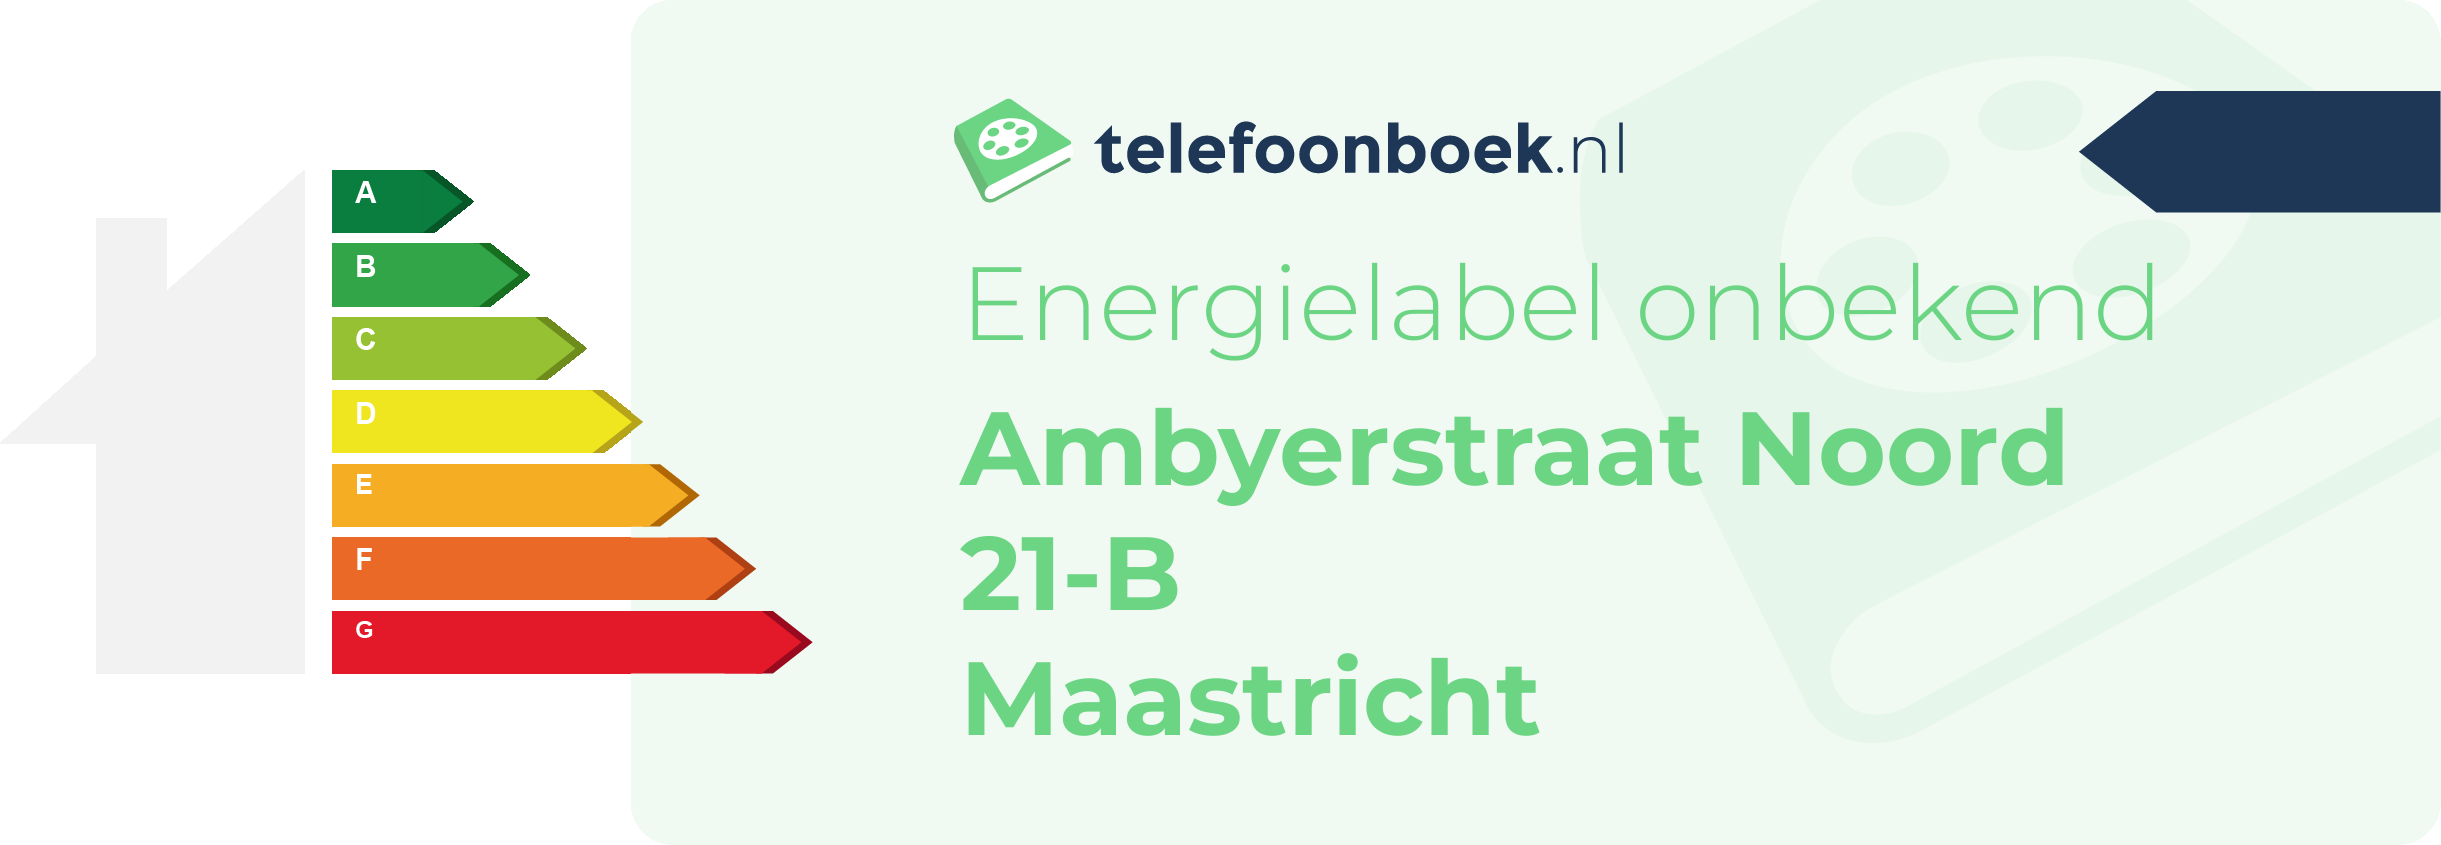 Energielabel Ambyerstraat Noord 21-B Maastricht